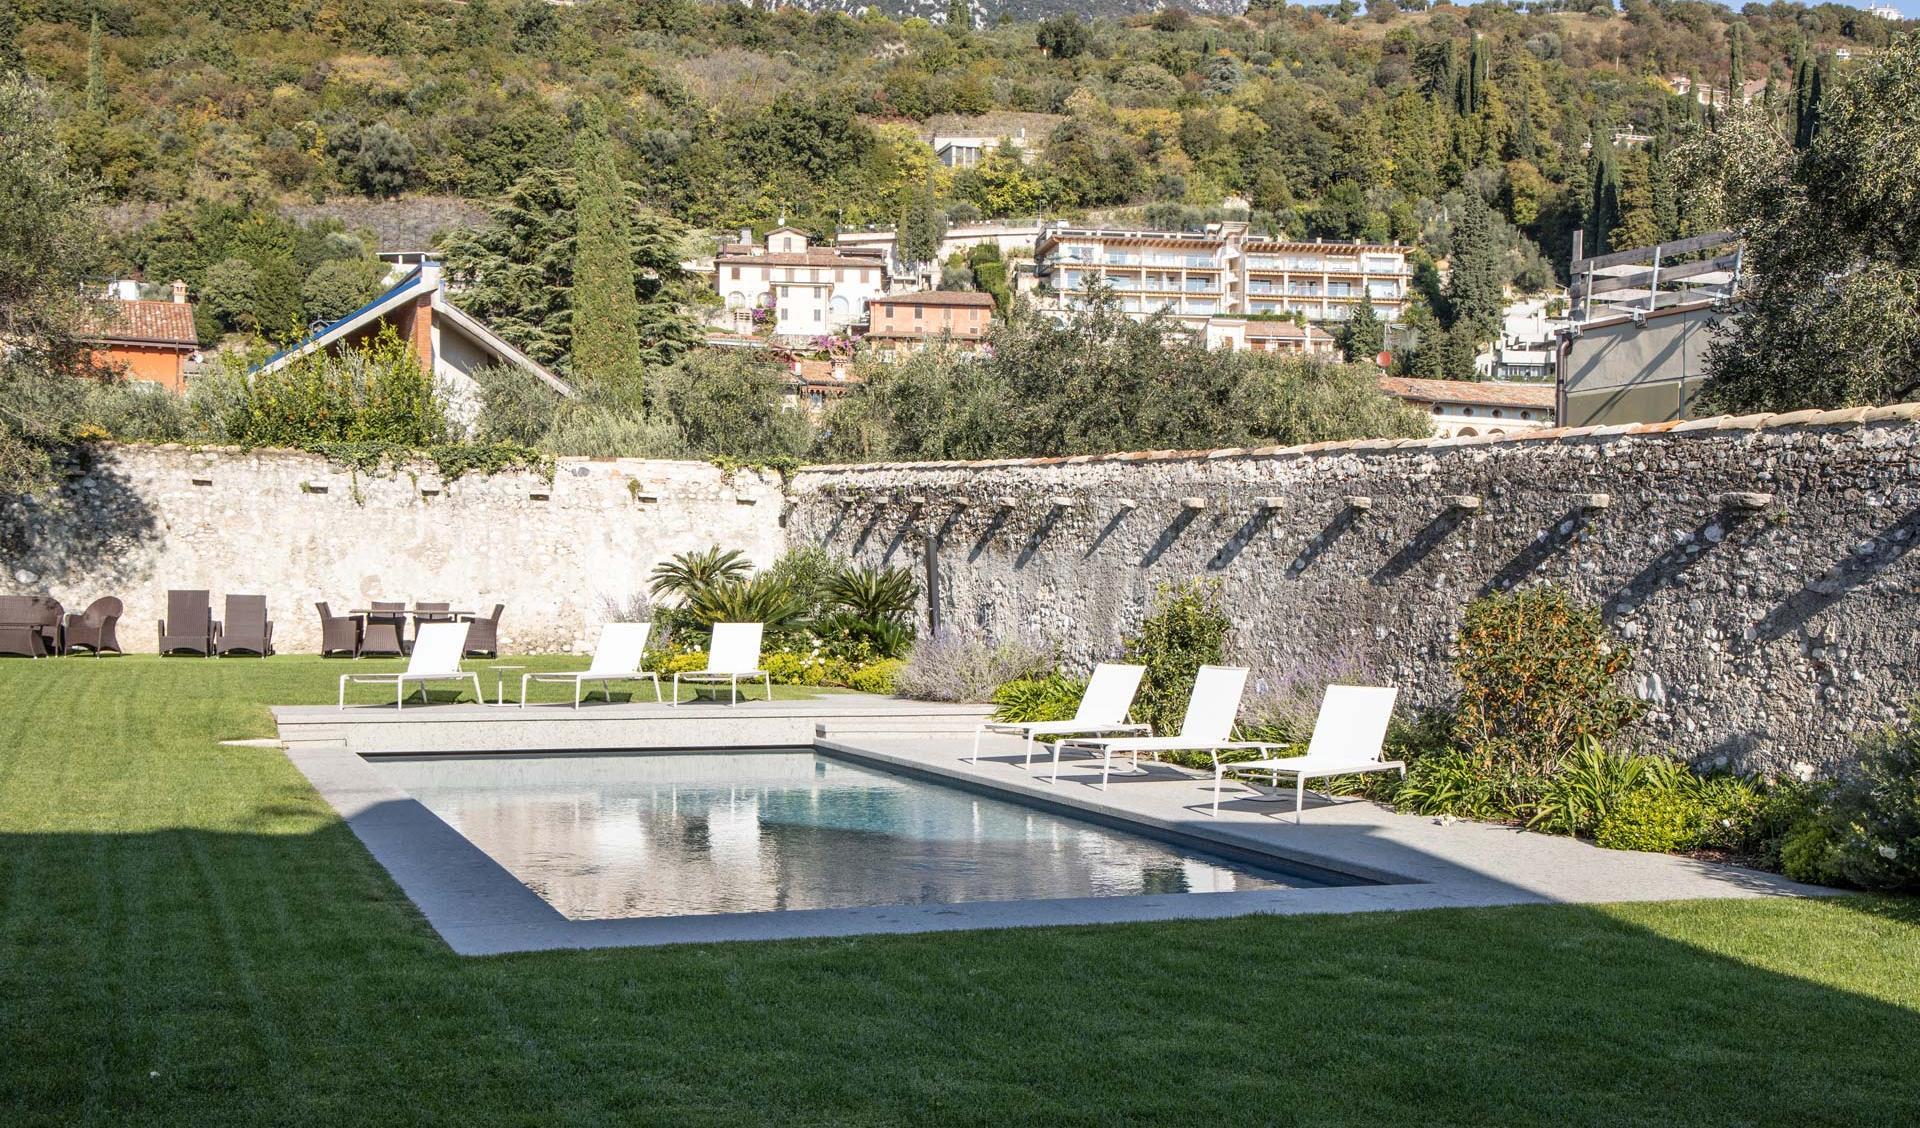 Restoration of villa in Toscolano Maderno